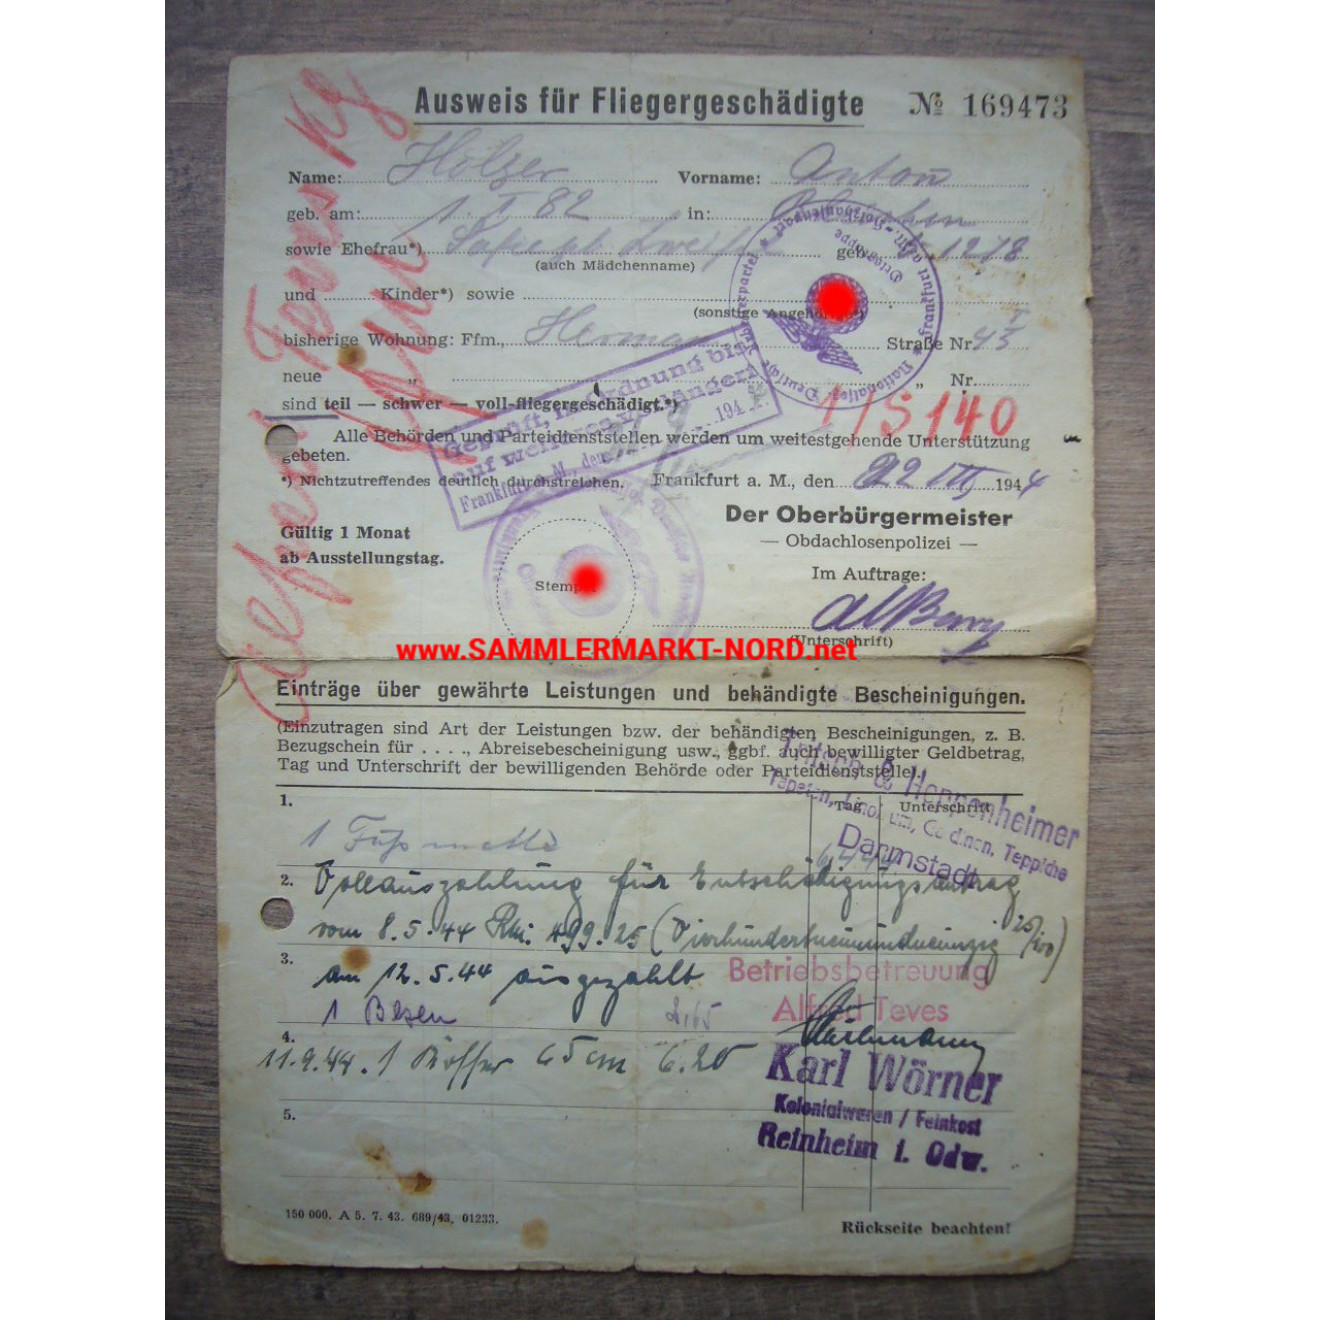 Ausweis für Fliegergeschädigte - Frankfurt am Main 1944